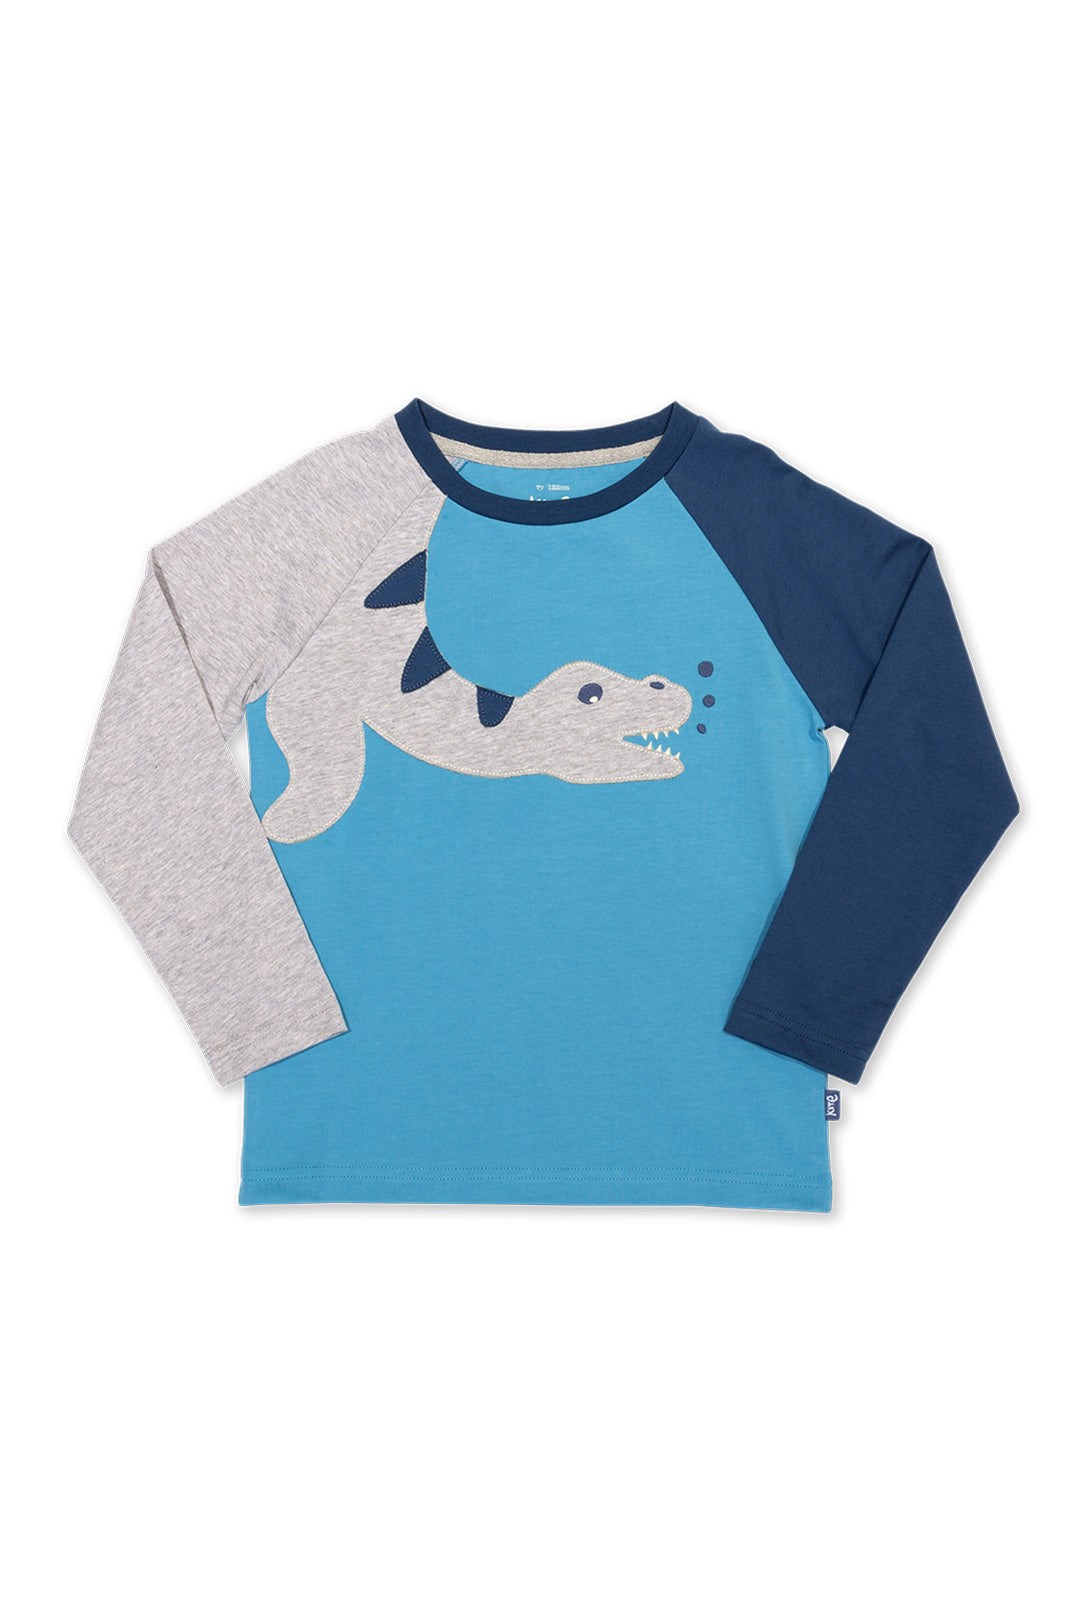 Plesiosaurus Baby/Kids Organic Cotton T-Shirt -